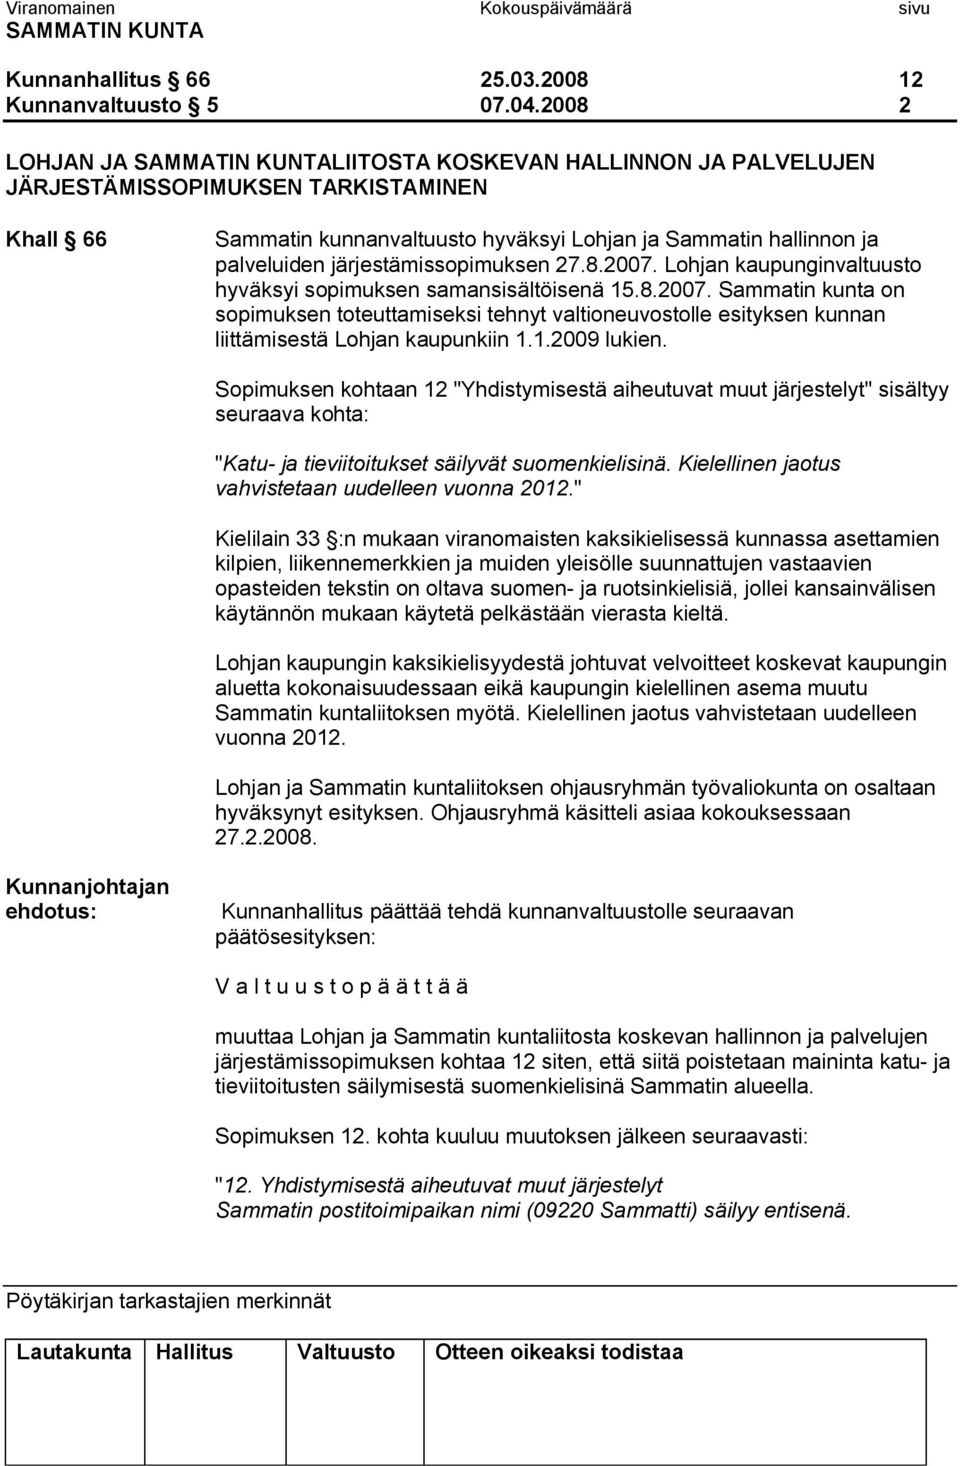 järjestämissopimuksen 27.8.2007. Lohjan kaupunginvaltuusto hyväksyi sopimuksen samansisältöisenä 15.8.2007. Sammatin kunta on sopimuksen toteuttamiseksi tehnyt valtioneuvostolle esityksen kunnan liittämisestä Lohjan kaupunkiin 1.